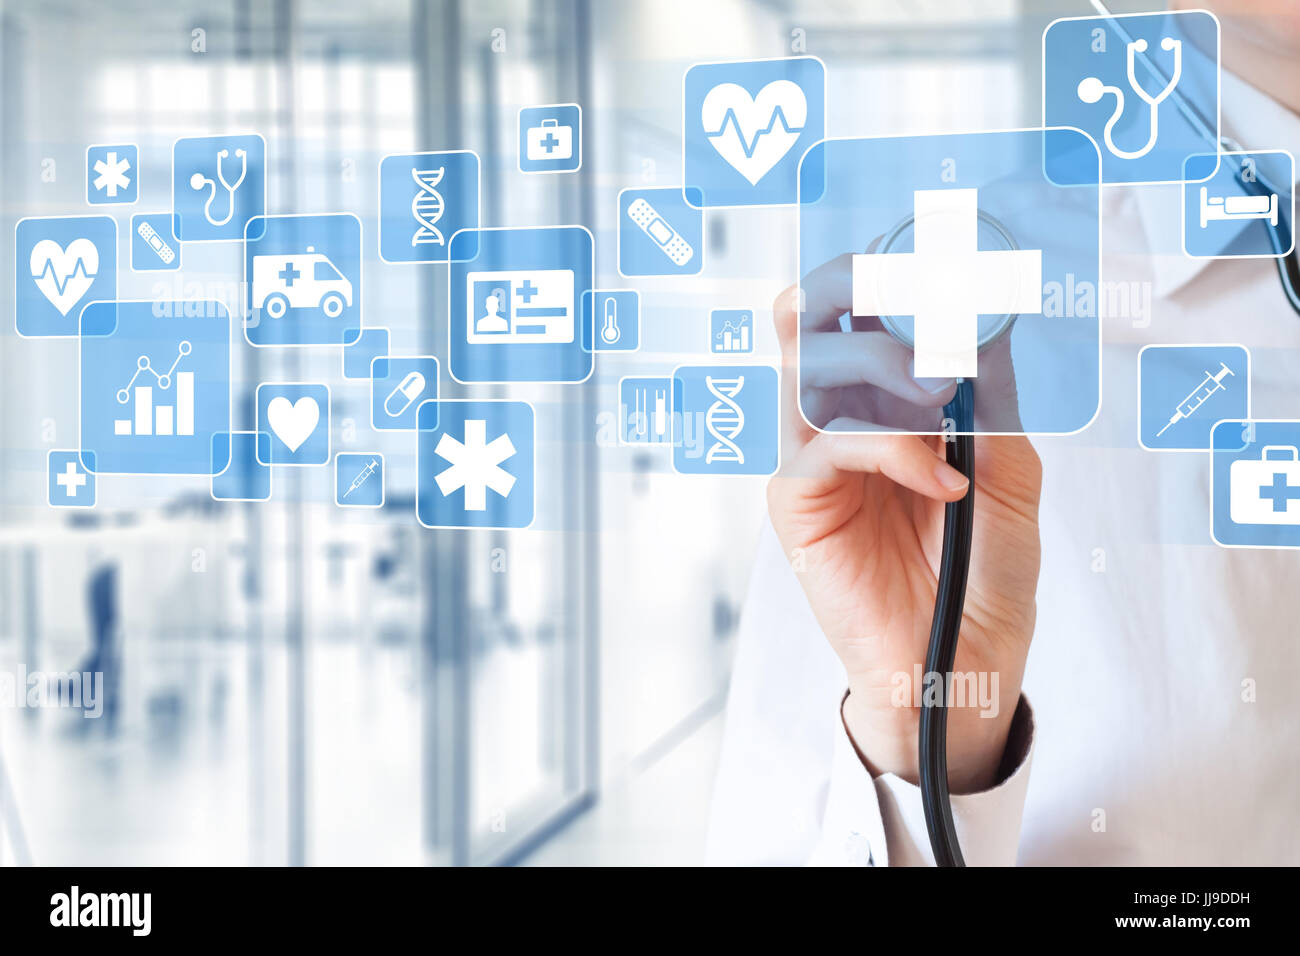 Femme médecin hand holding stethoscope touchant les services de soins de santé à propos des icônes sur l'écran virtuel à l'intérieur de l'hôpital avec en arrière-plan Banque D'Images